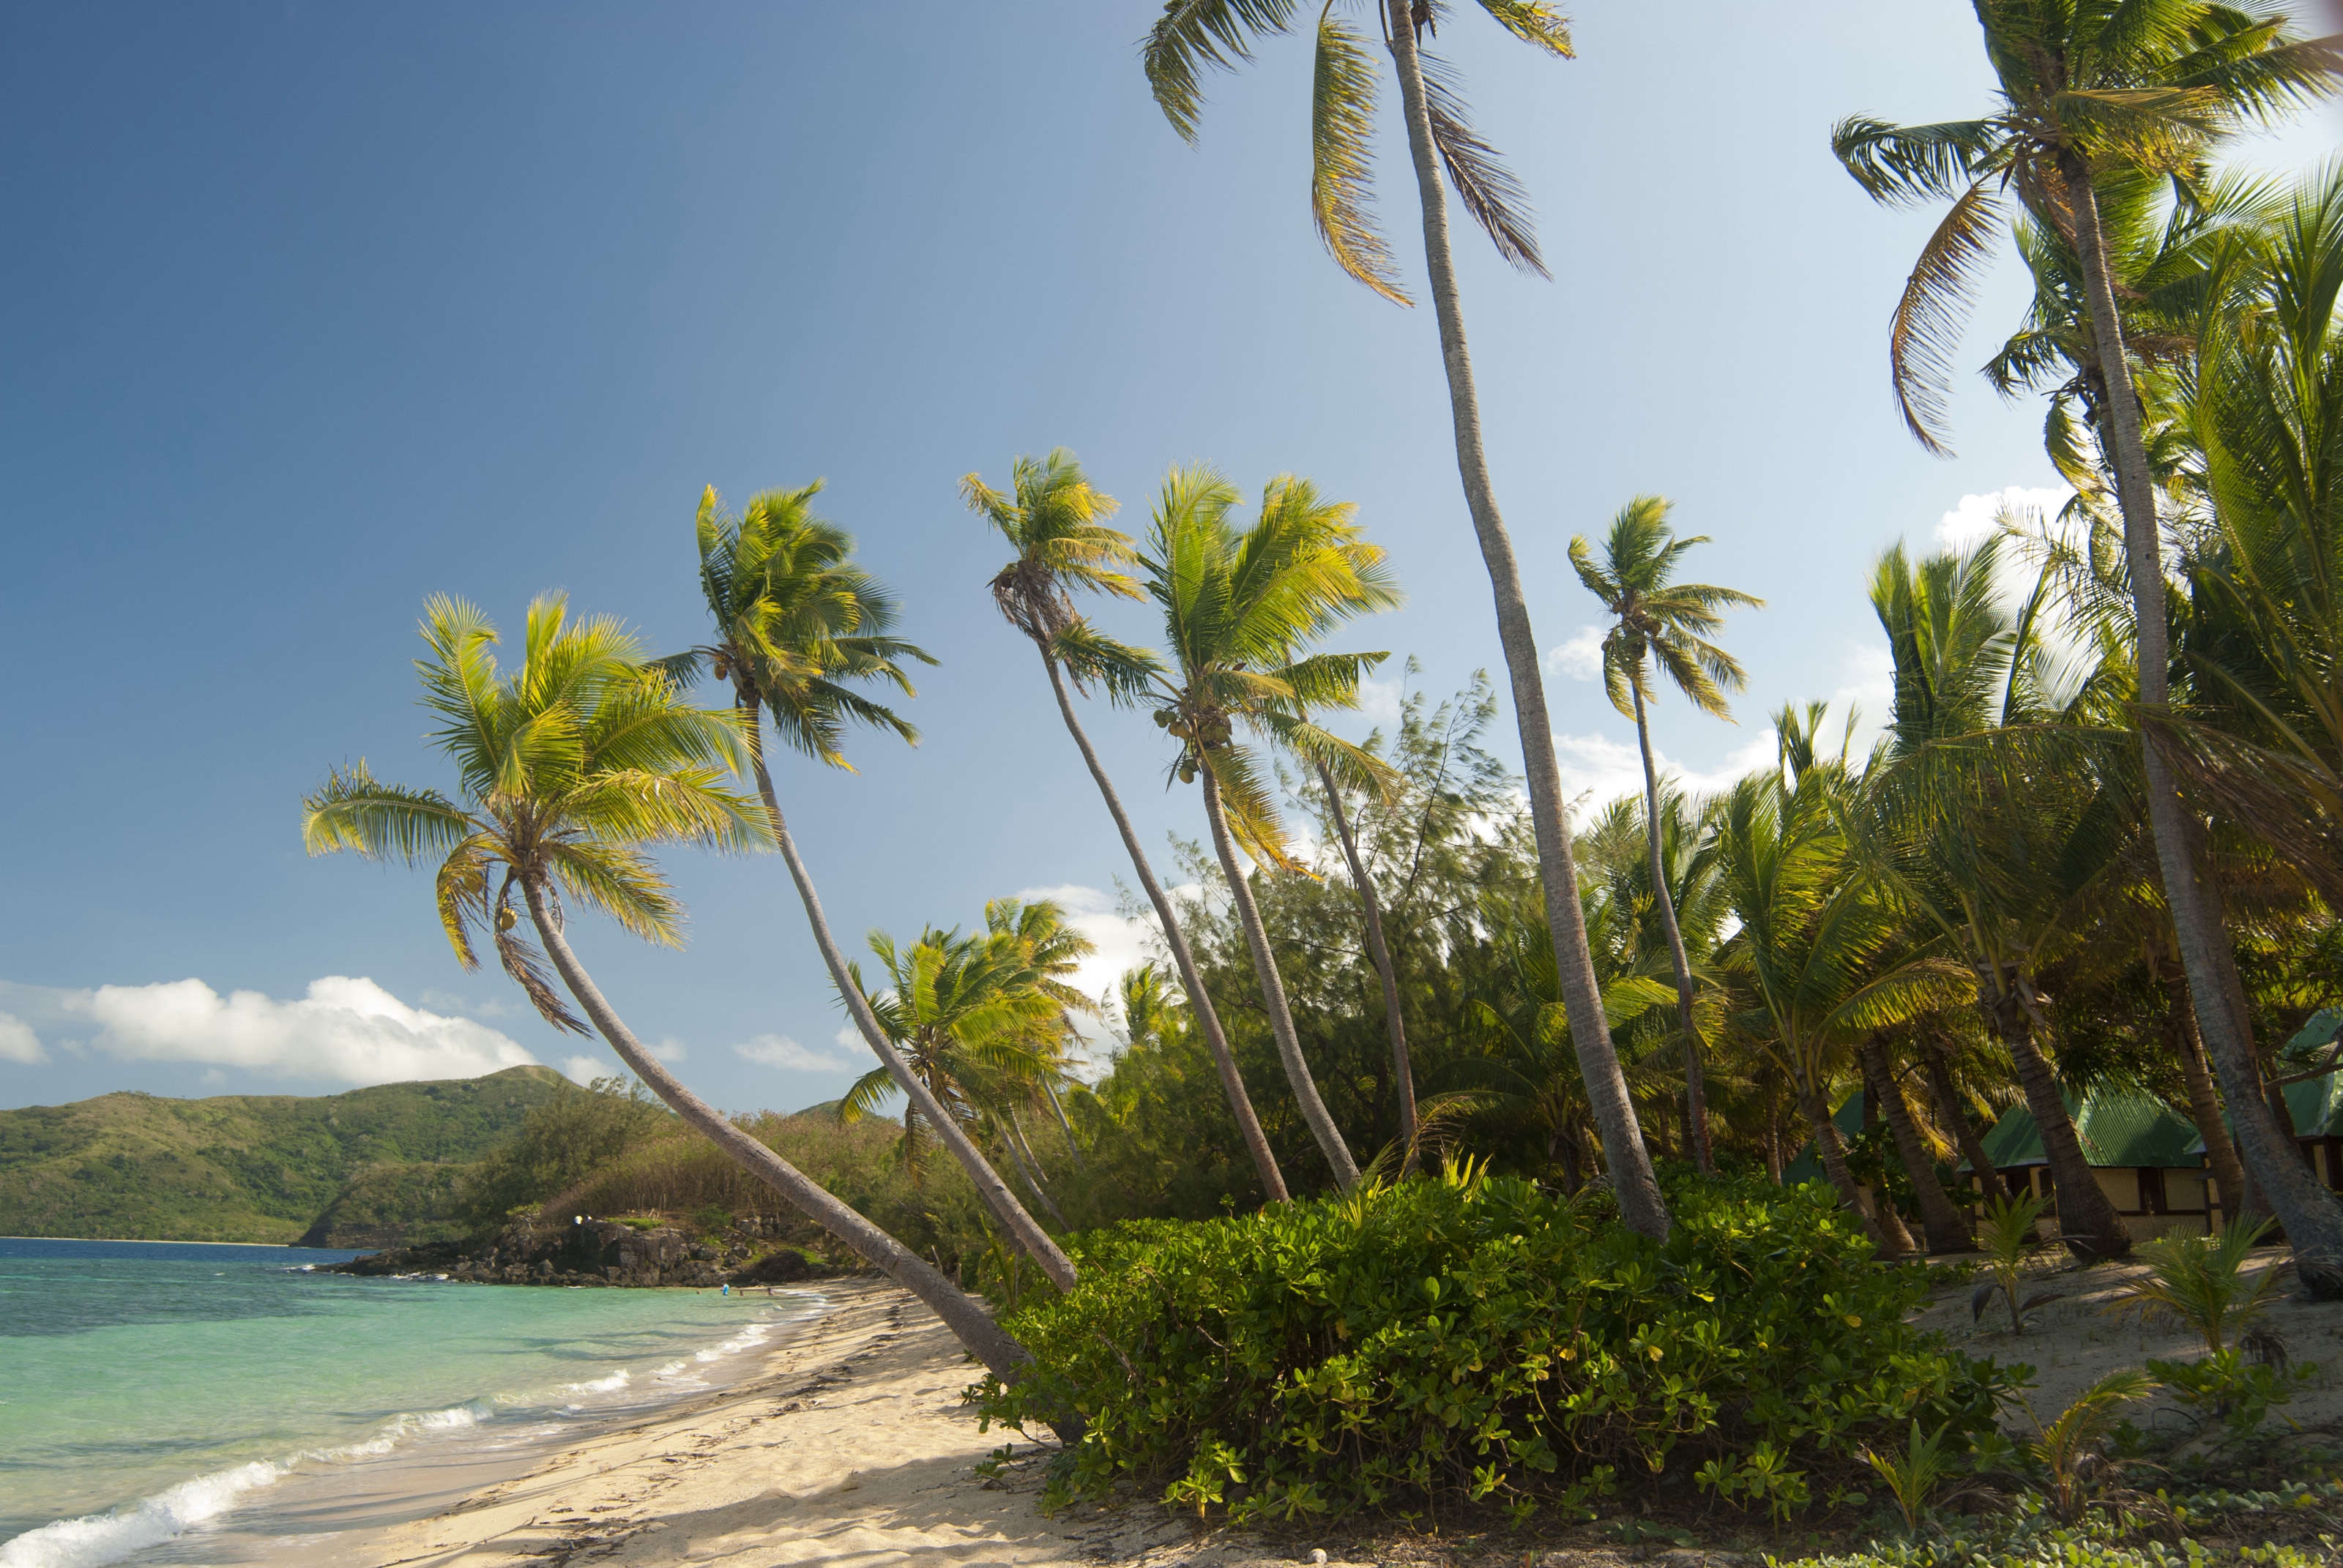 Descarga gratuita de fondo de pantalla para móvil de Zona Tropical, Trópico, Naturaleza, Maldivas, Palms, Playa.